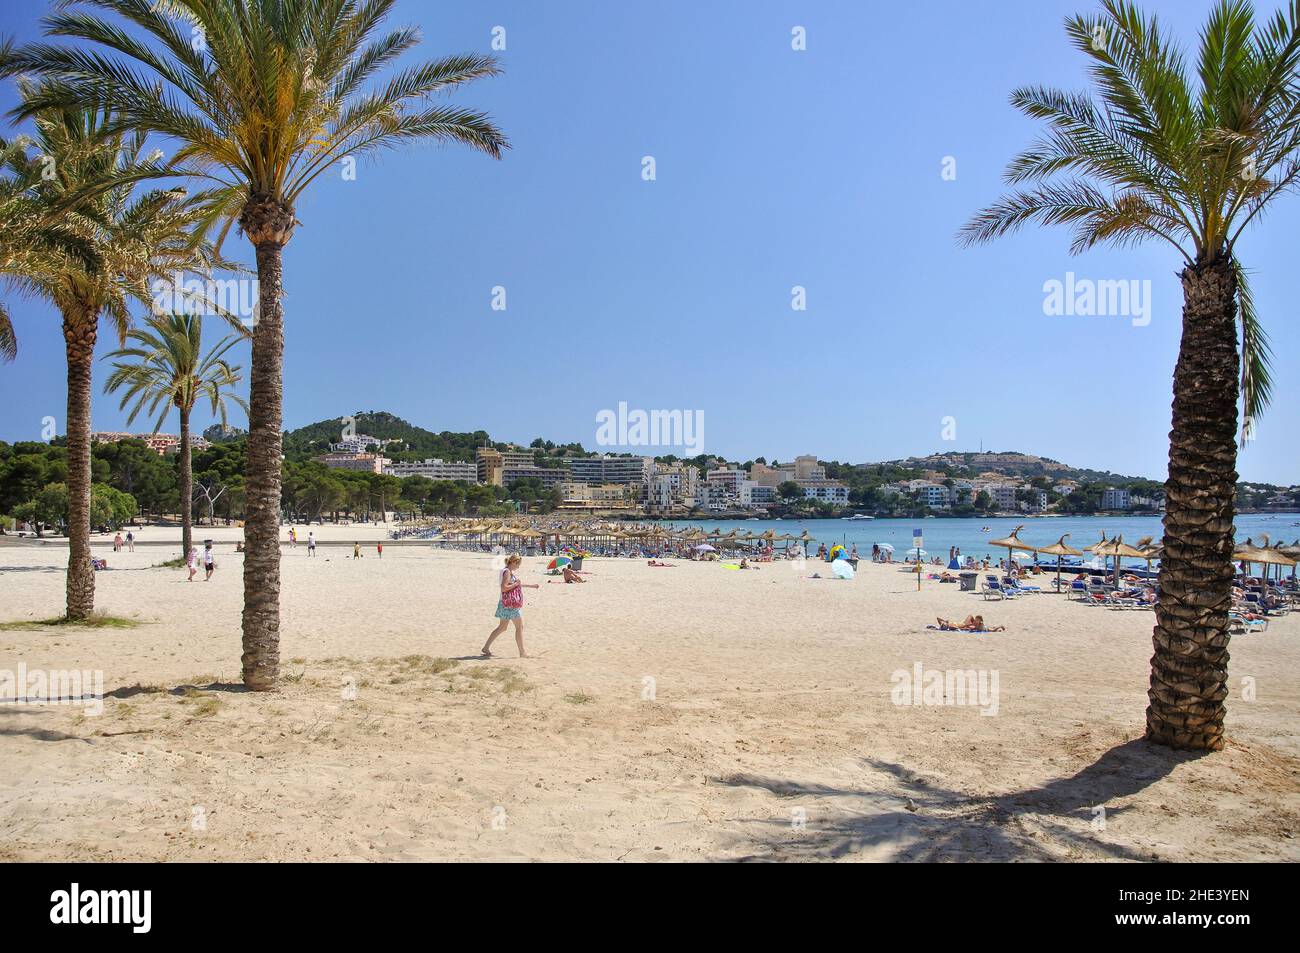 Platja Santa Ponca, Santa Ponsa (Santa Ponca), Majorca (Mallorca), Balearic Islands, Spain Stock Photo